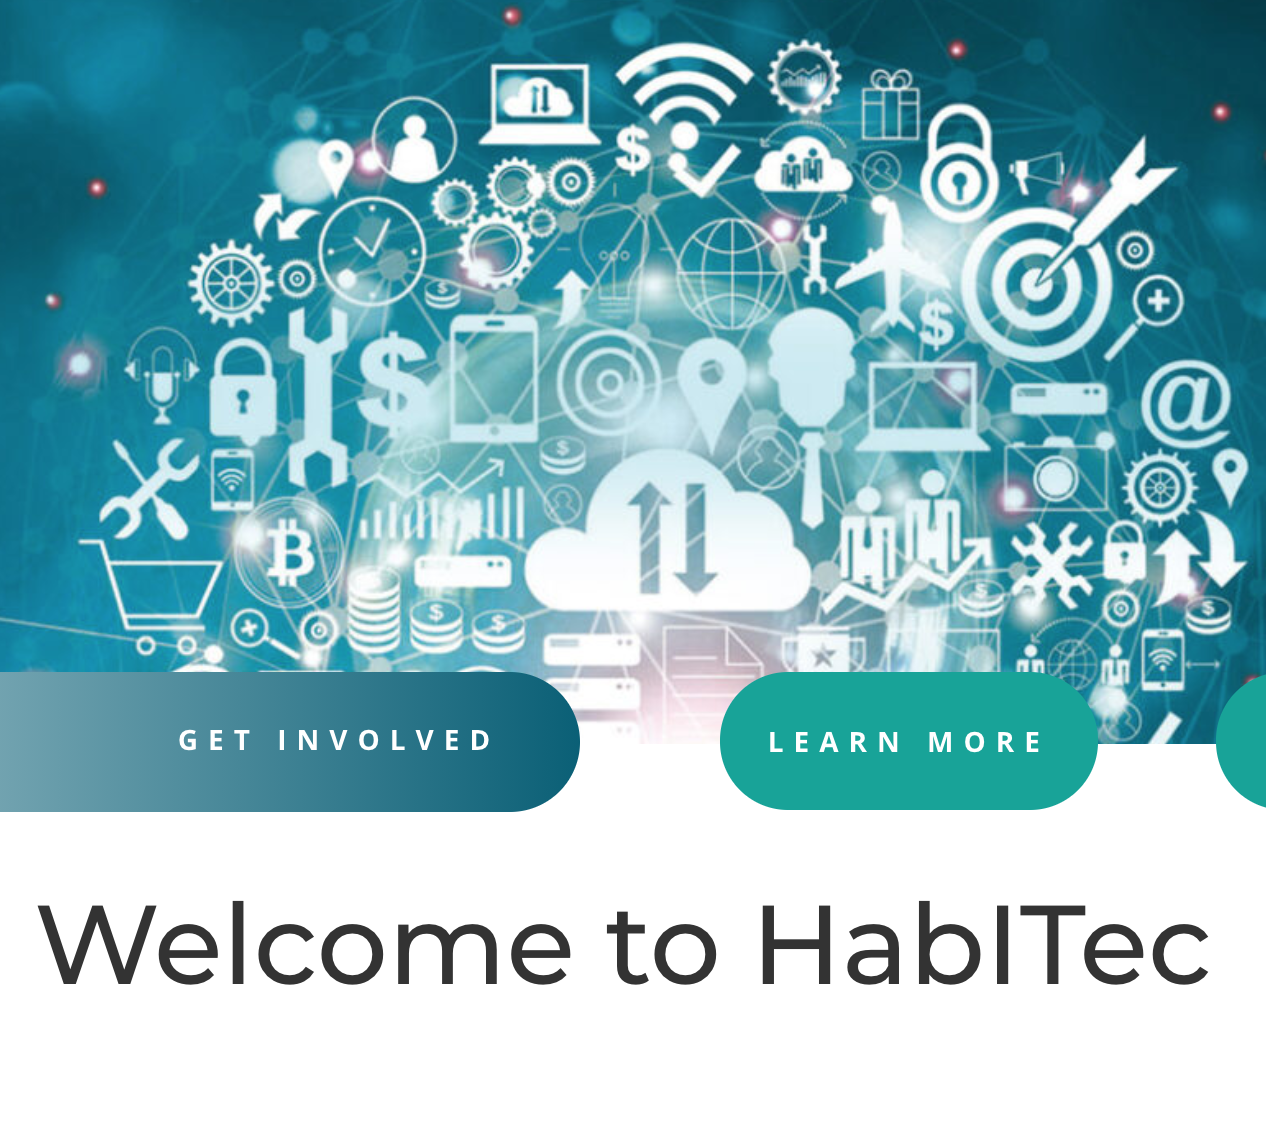 UI/UX Design and FE development for Habitec